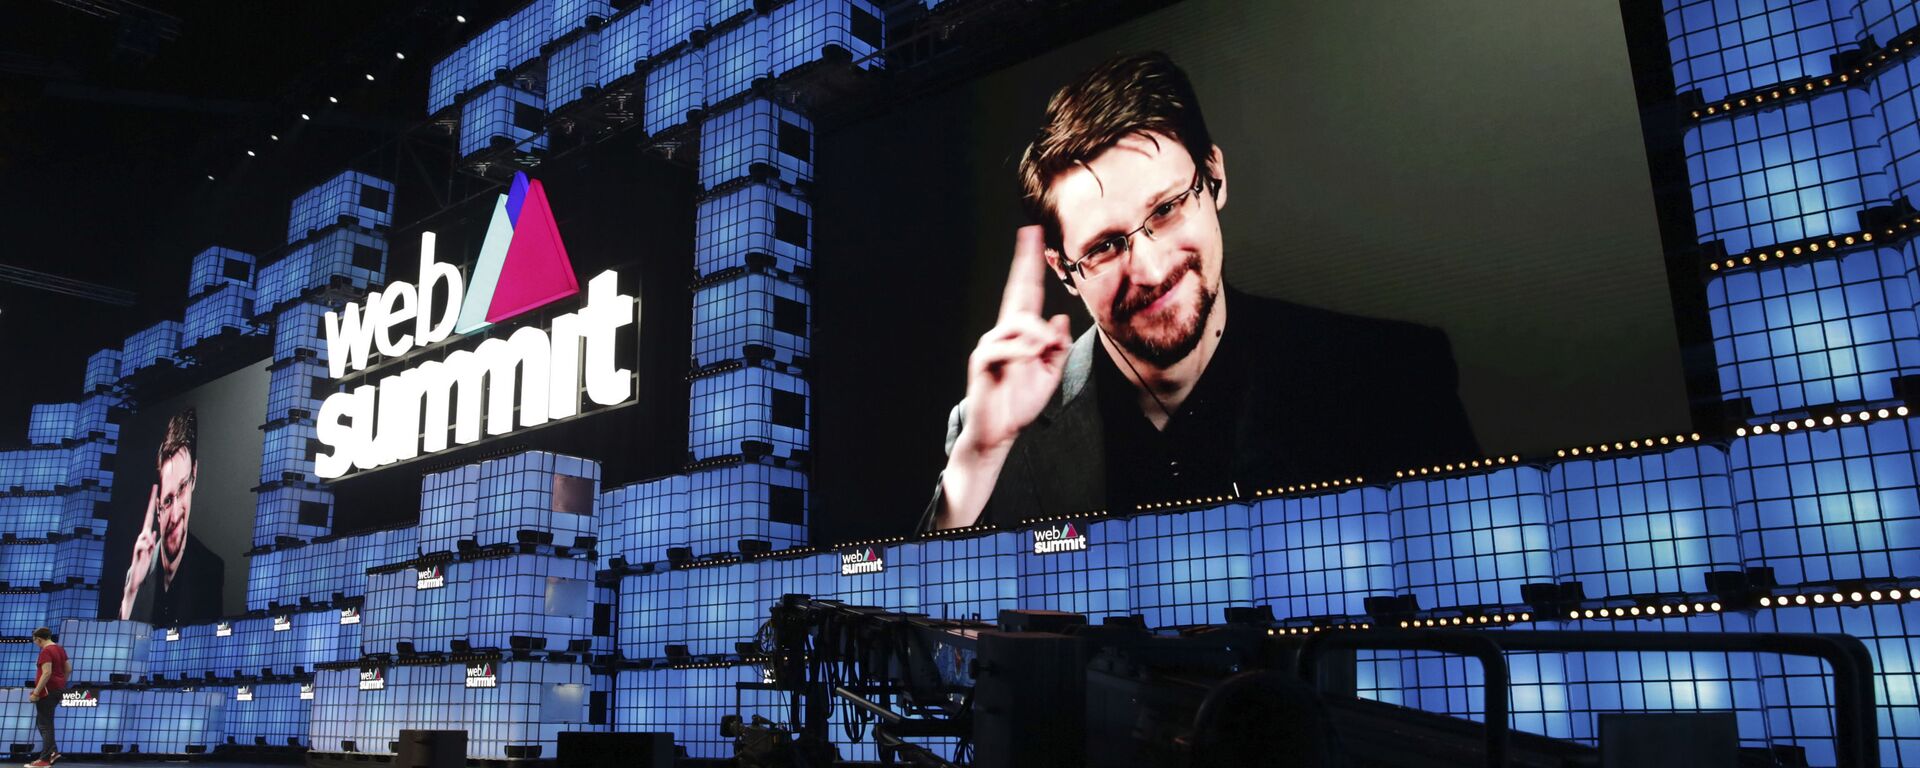 Cựu nhà thầu Cơ quan An ninh Quốc gia Hoa Kỳ Edward Snowden phát biểu với những người tham dự thông qua liên kết video tại hội nghị công nghệ Web Summit ở Lisbon, Thứ Hai, ngày 4 tháng 11 năm 2019. Snowden đã sống ở Nga để thoát khỏi sự truy tố của Hoa Kỳ sau khi rò rỉ tài liệu mật nêu chi tiết các chương trình giám sát của chính phủ - Sputnik Việt Nam, 1920, 19.12.2020